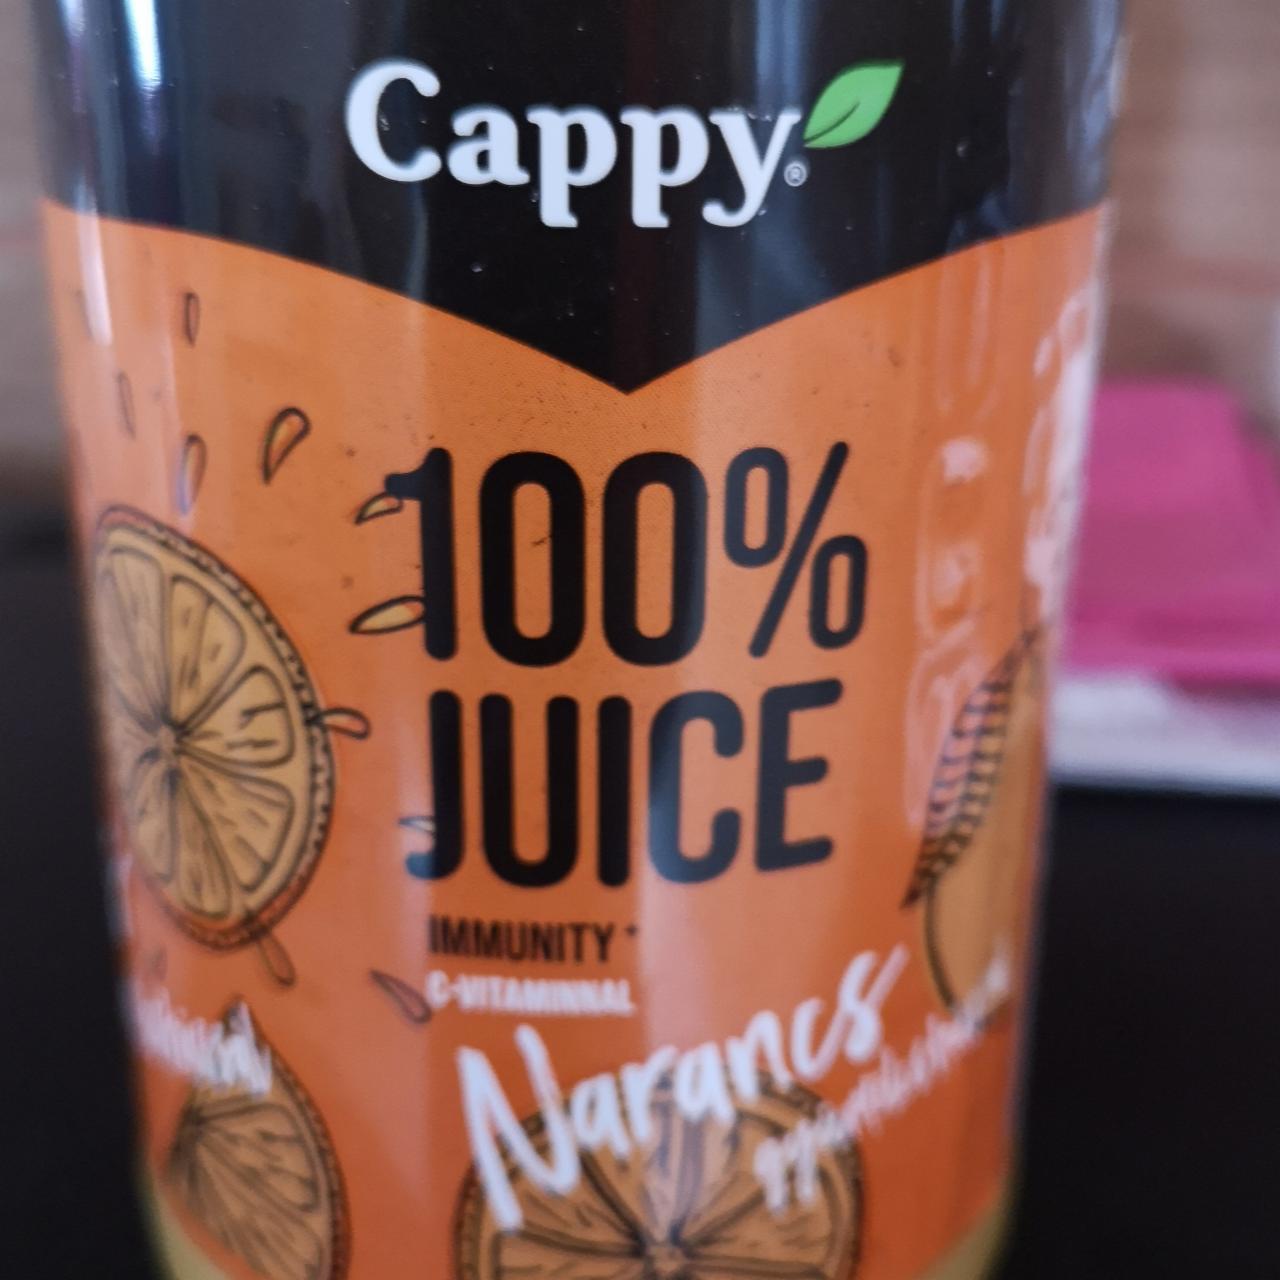 Képek - Narancs gyümölcshússal 100% juice Cappy